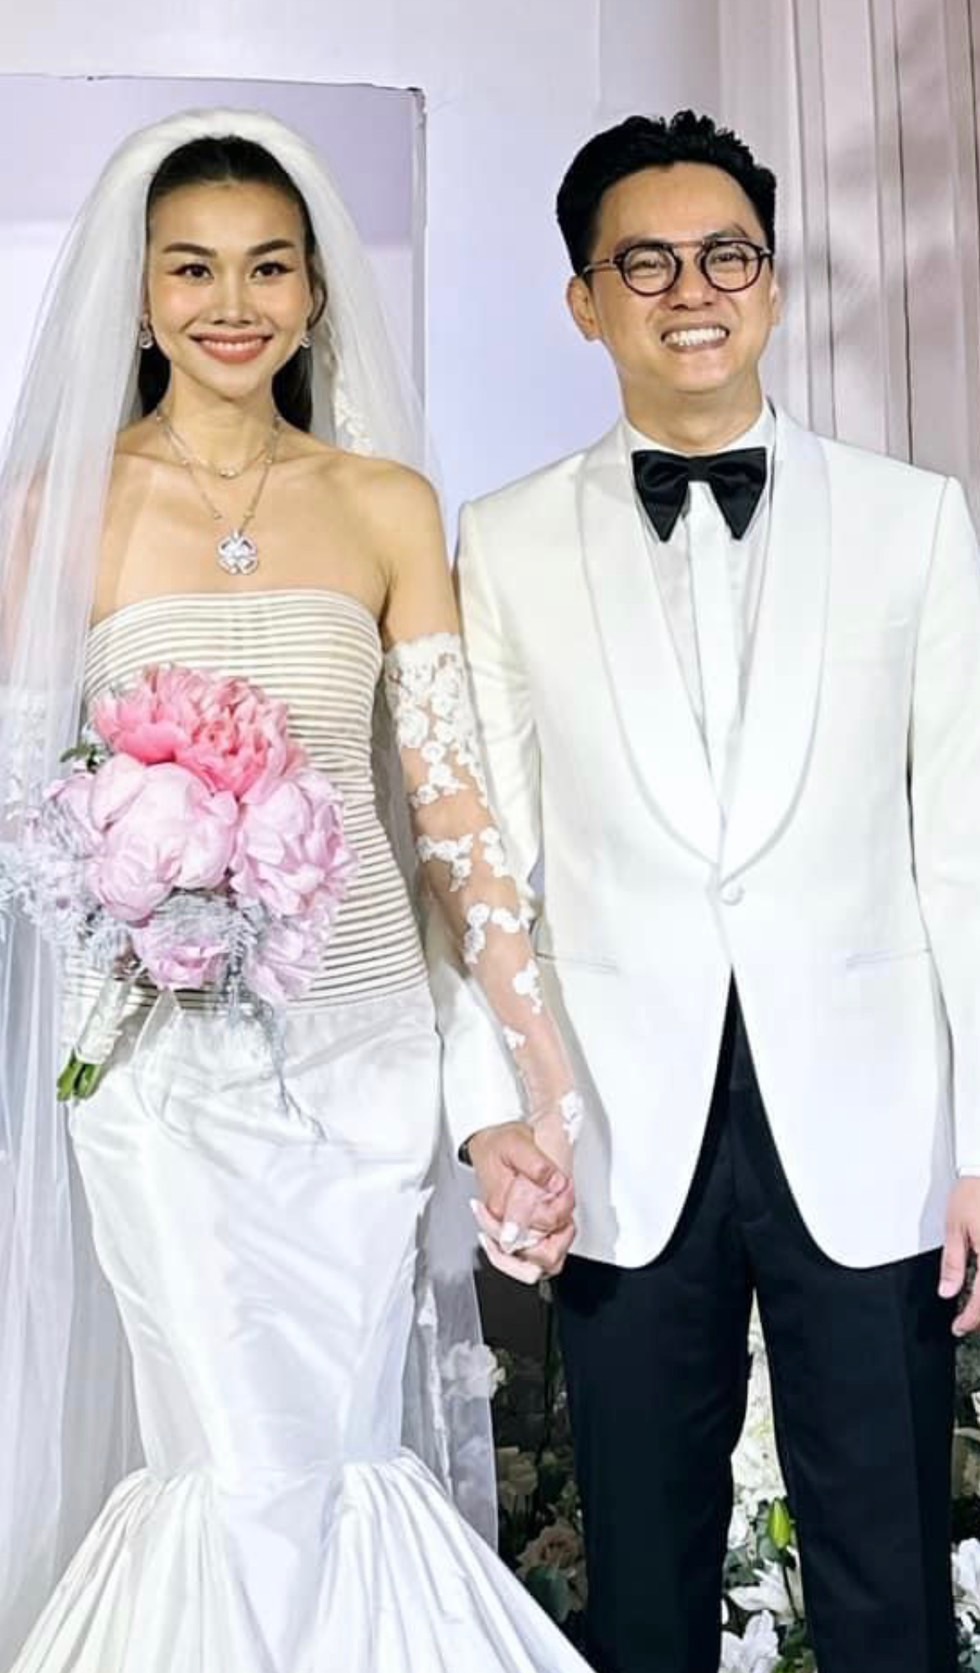 Siêu mẫu Thanh Hằng làm đám cưới với chồng nhạc trưởng - Ảnh 2.